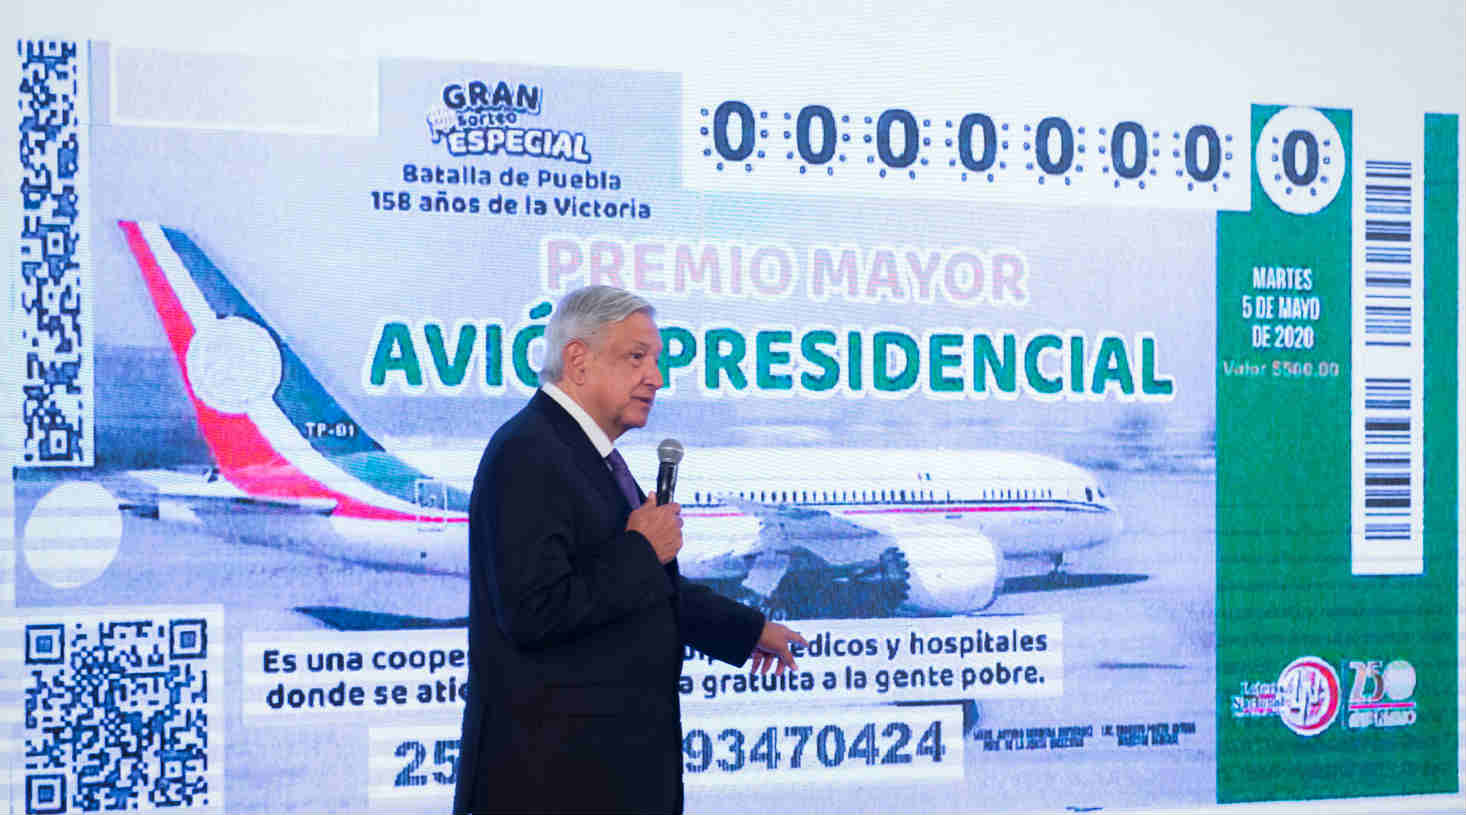 Critican a AMLO por iniciar venta de boletos para ‘rifa del avión’ el 9M